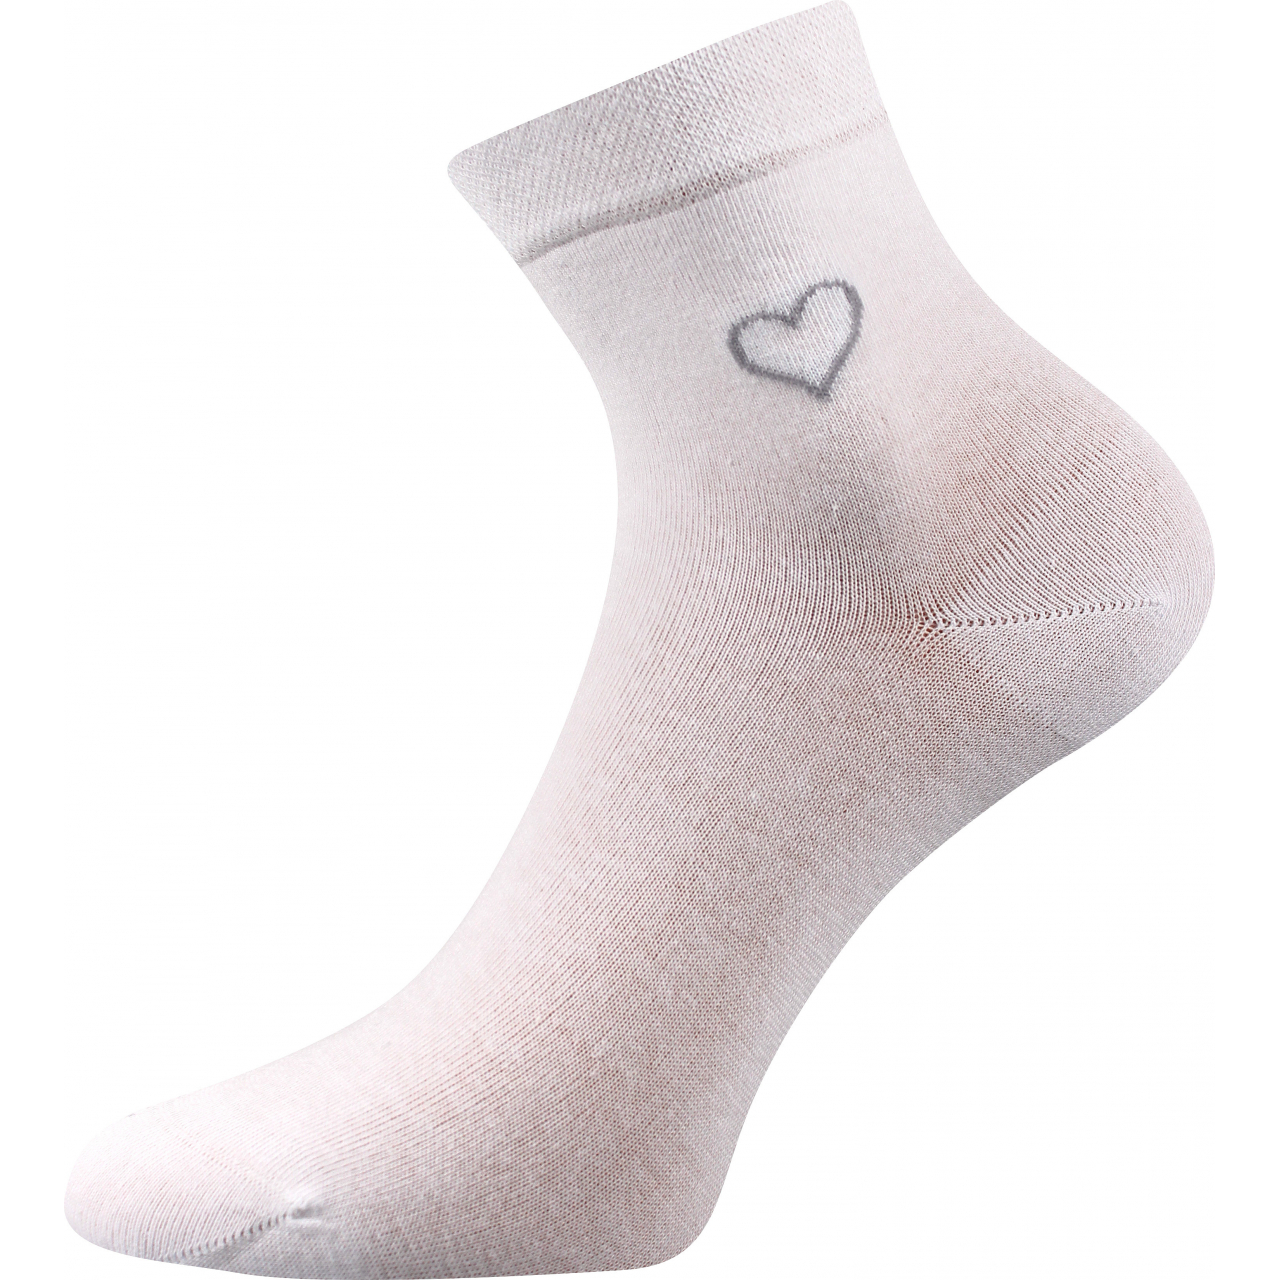 Ponožky elegantní dámské Lonka Filiona - bílé, 39-42